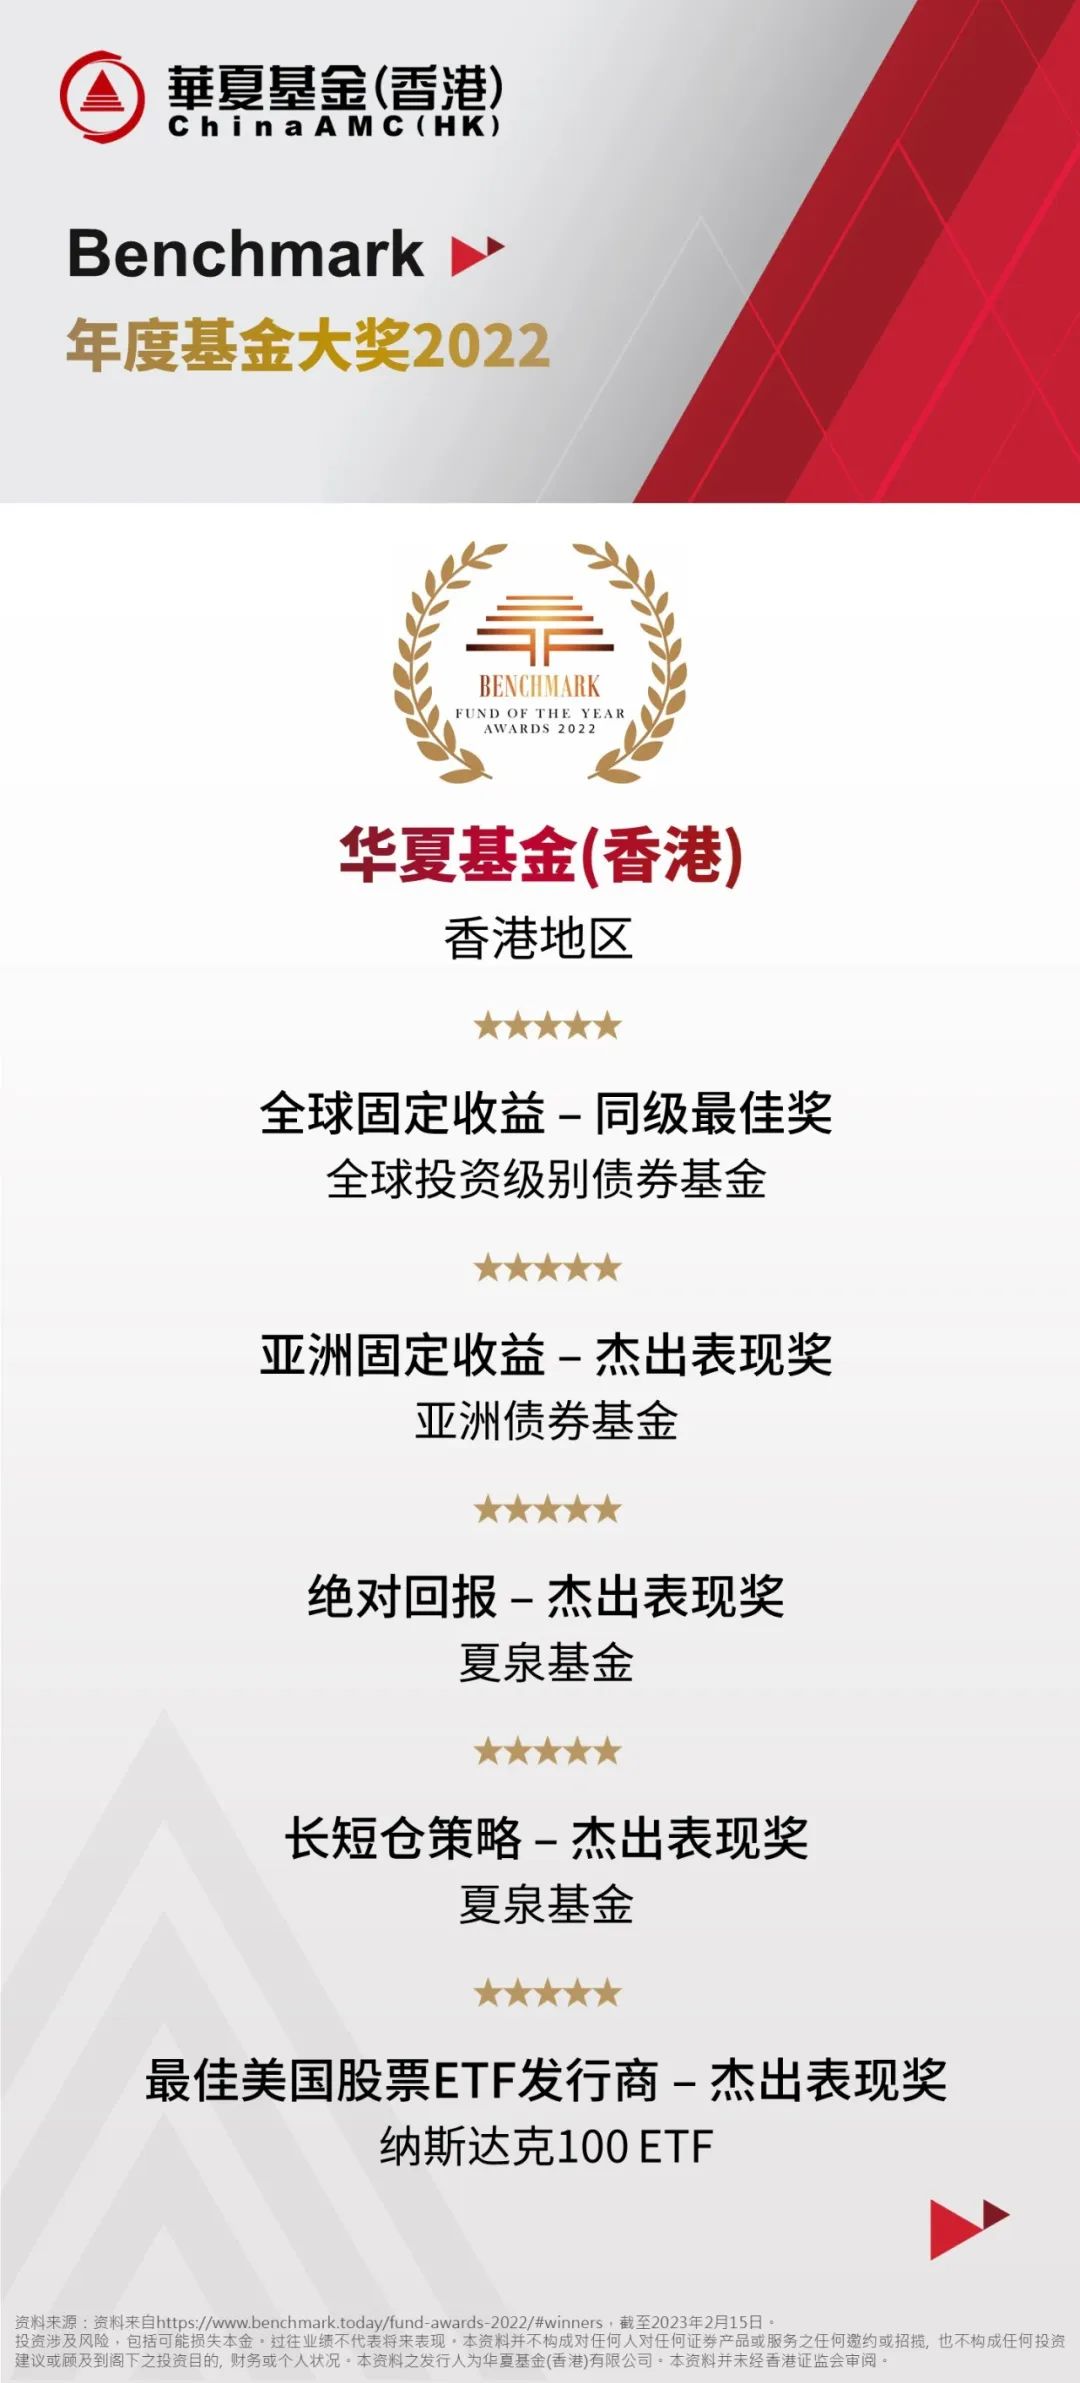 华夏香港荣获《Benchmark》「年度基金大奖2022」